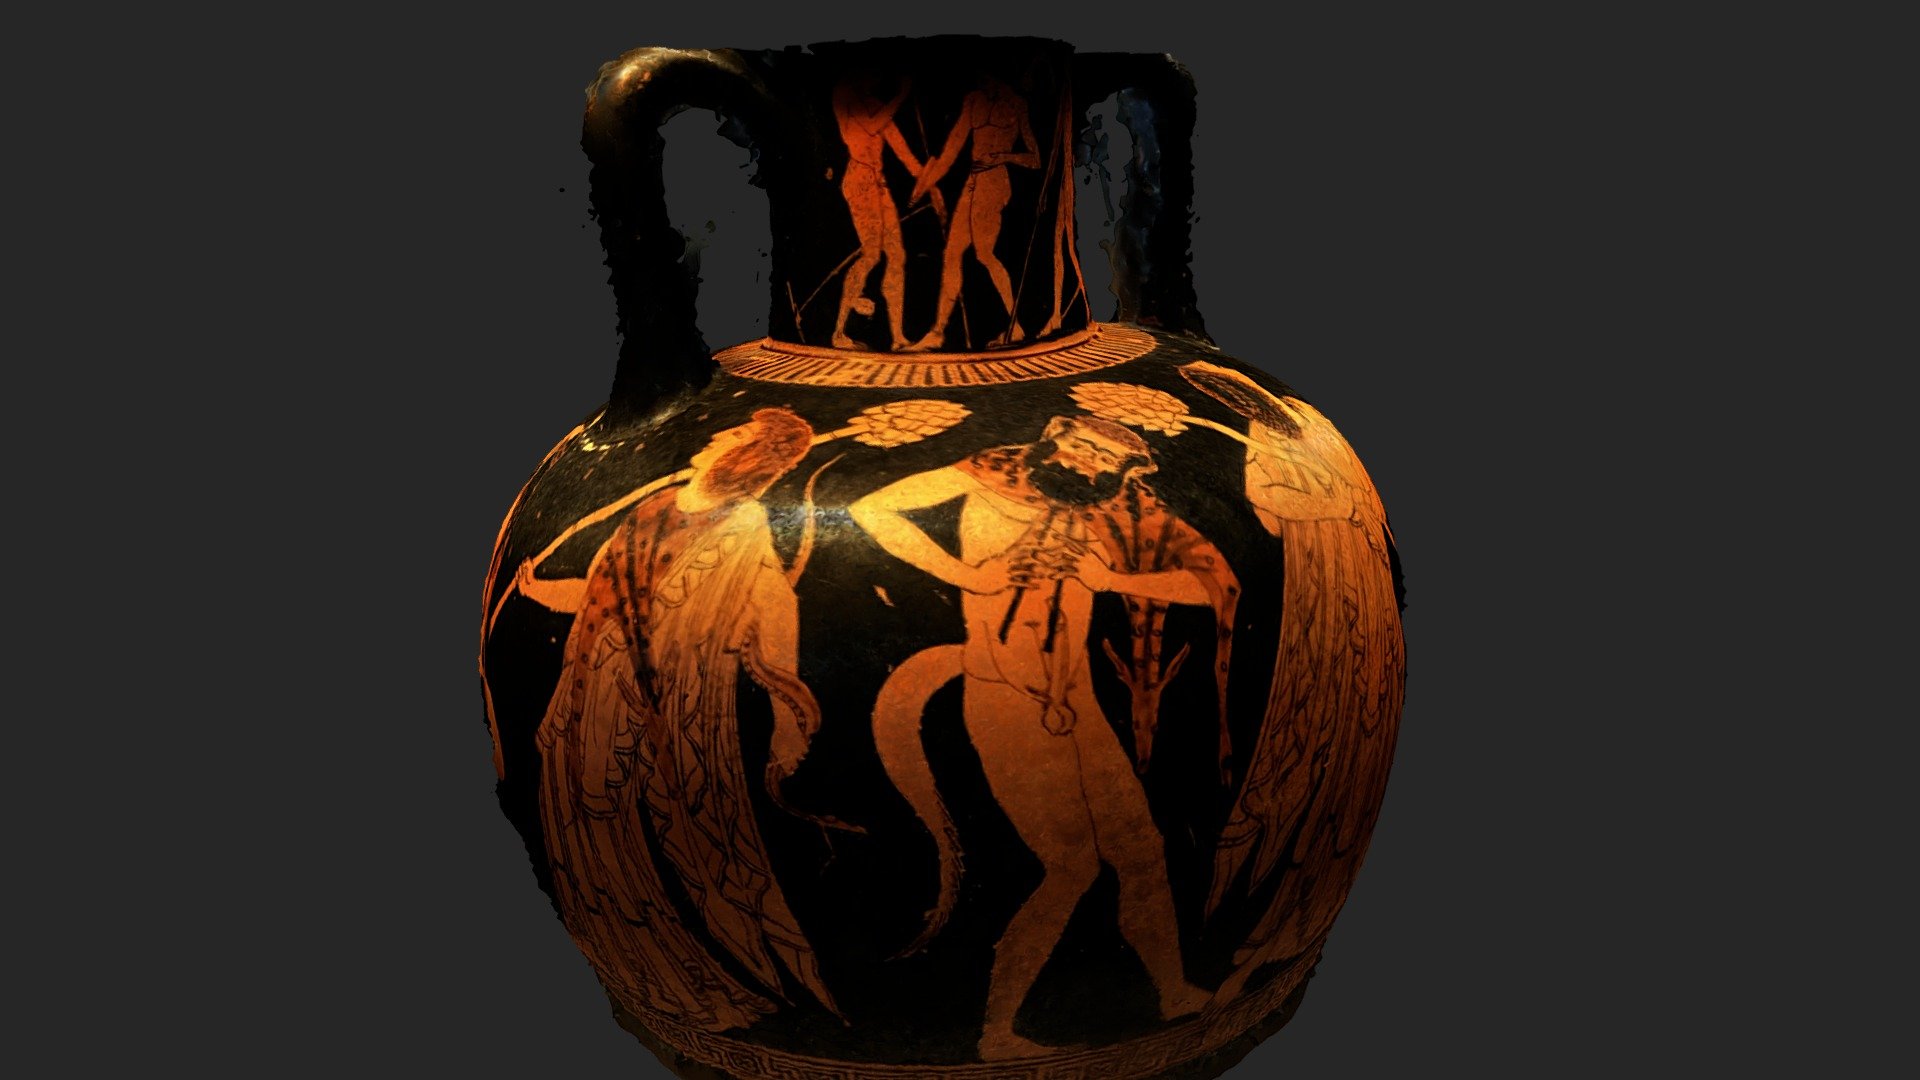 Amphora: Staatliche Antikensammlungen, Munich